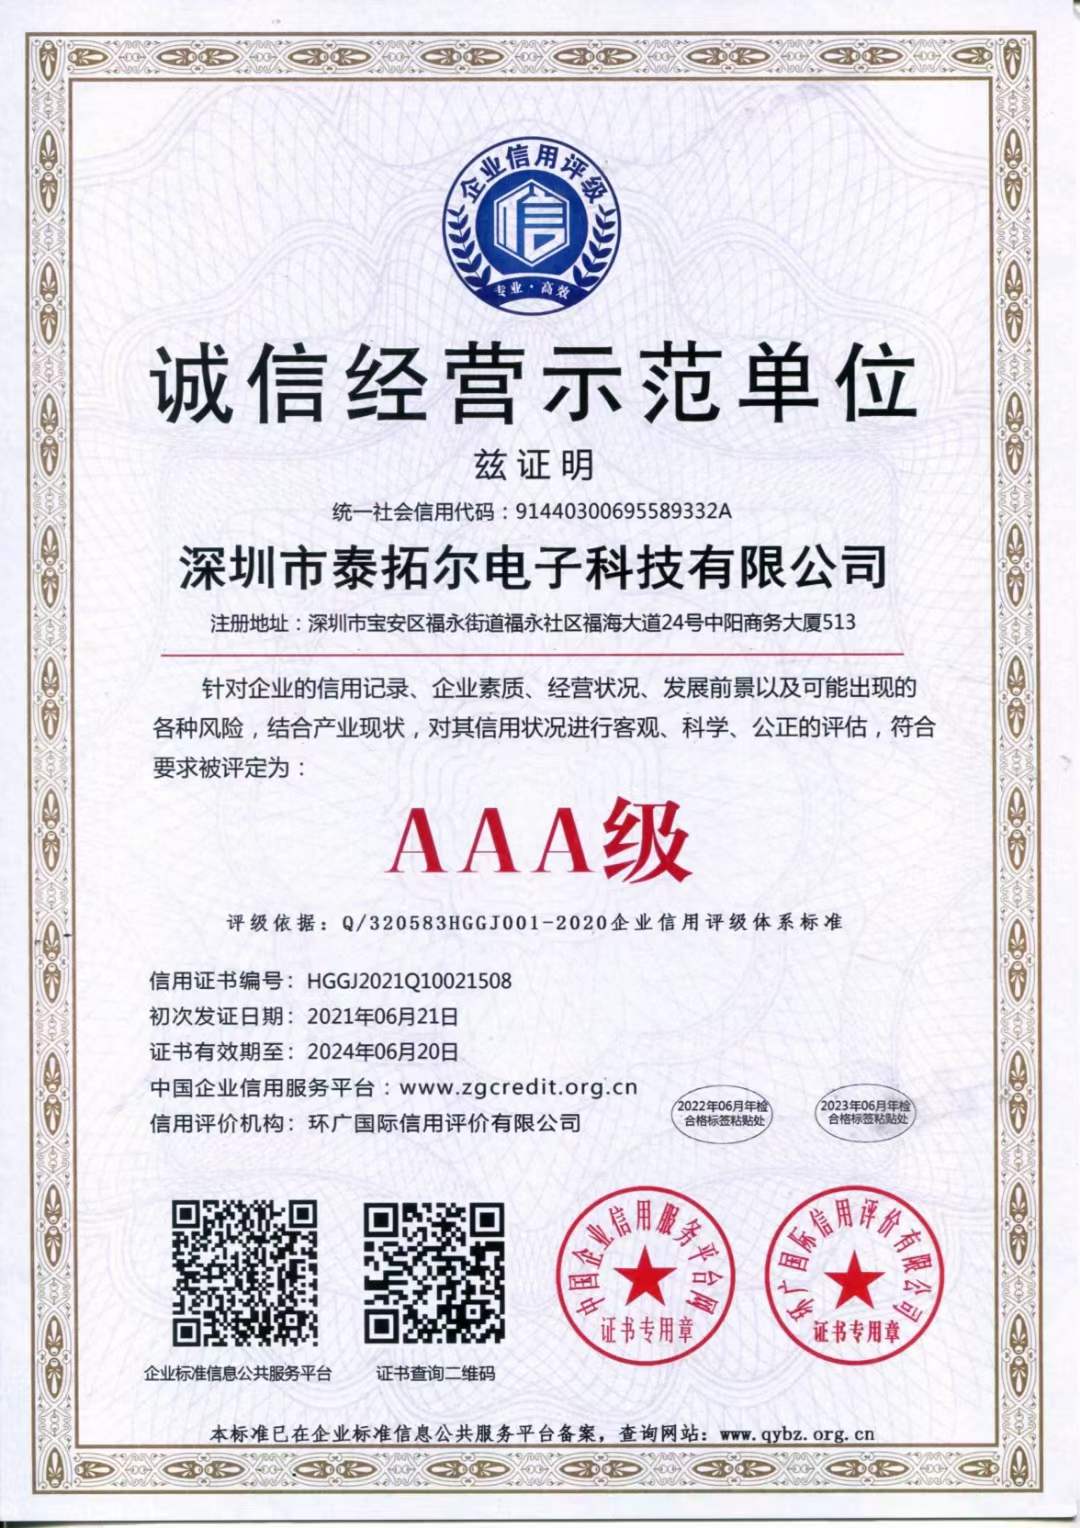 恭贺深圳市泰拓尔电子科技有限公司荣获企业信用评级AAA信用等级荣誉